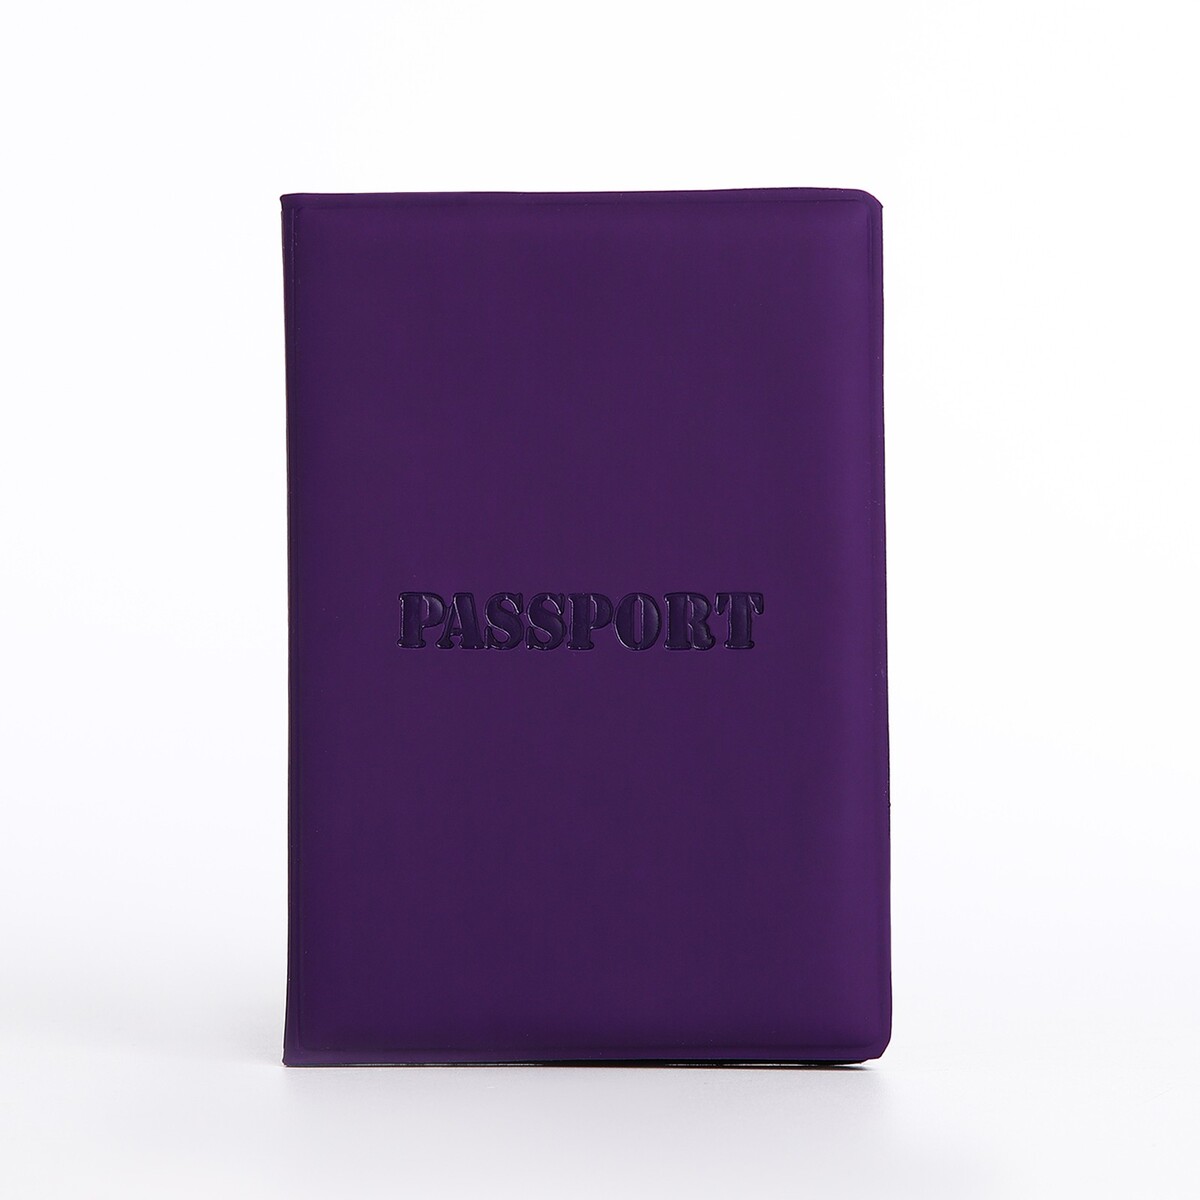 Обложка для паспорта, цвет фиолетовый обложка для паспорта фиолетовый